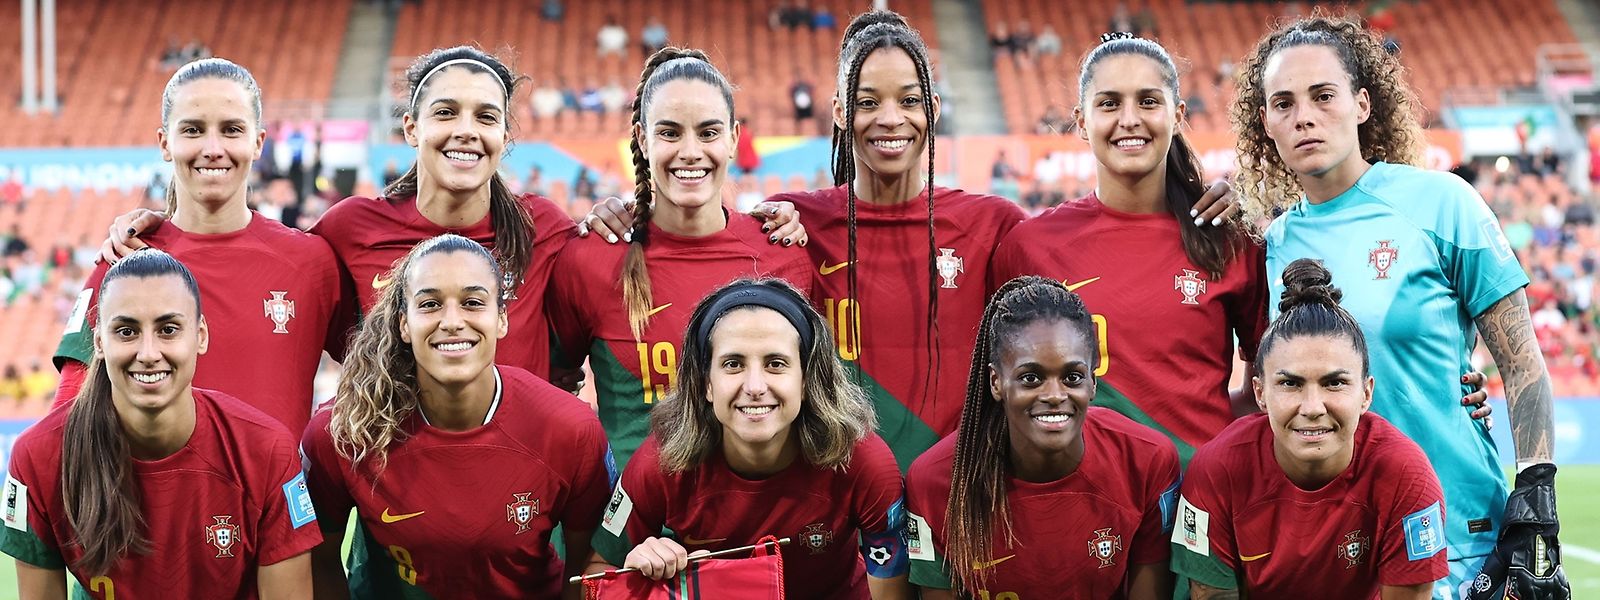 Elas vão defender Portugal no campeonato do mundo de futebol feminino este ano. Um feito inédito na história do futebol feminino português.